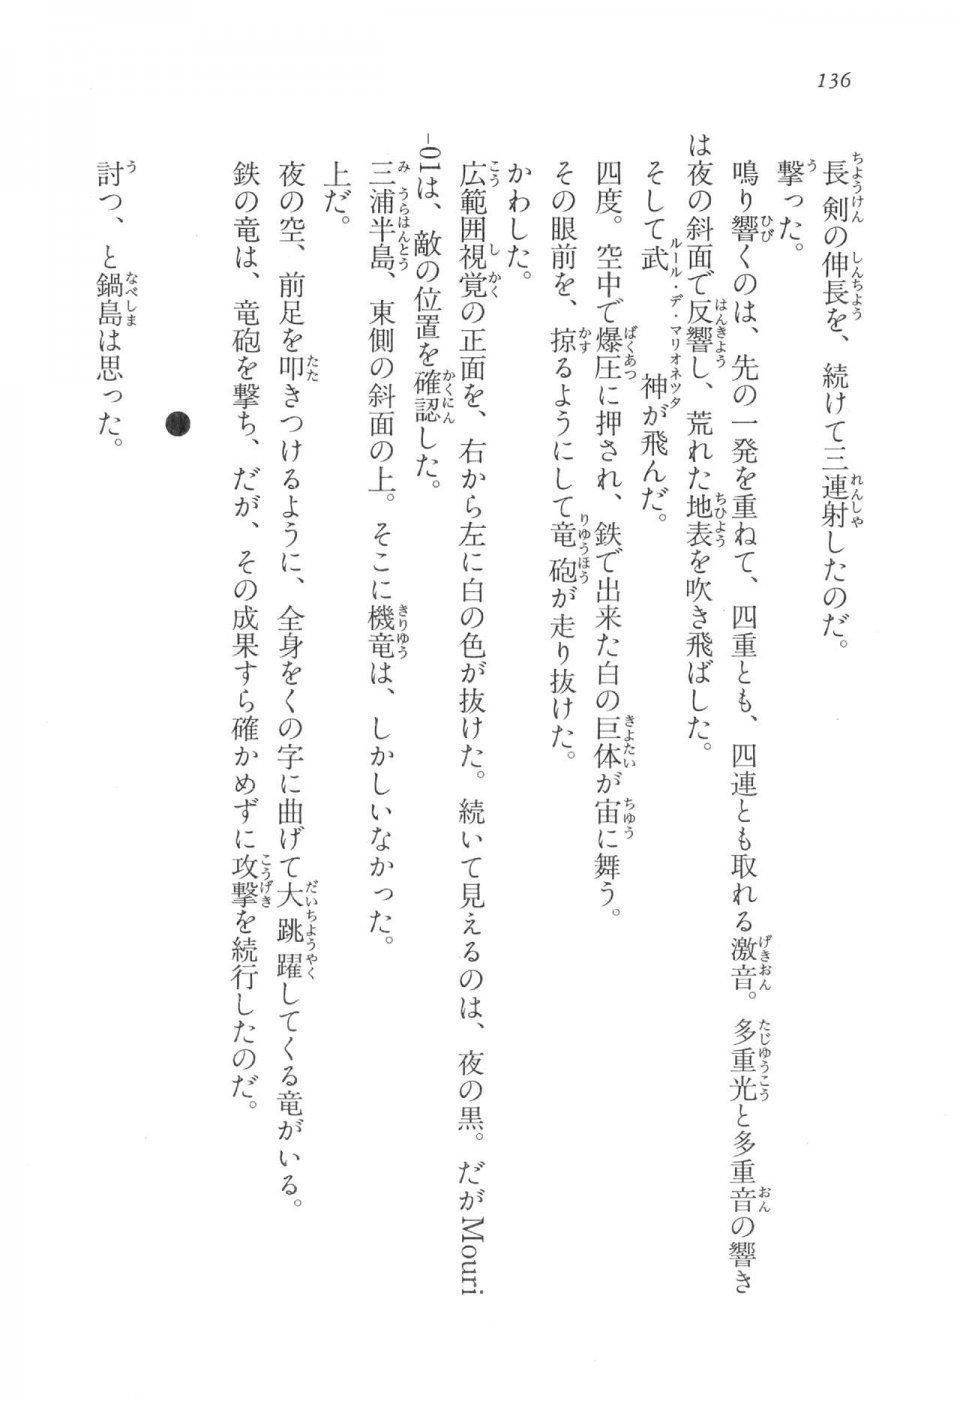 Kyoukai Senjou no Horizon LN Vol 17(7B) - Photo #136